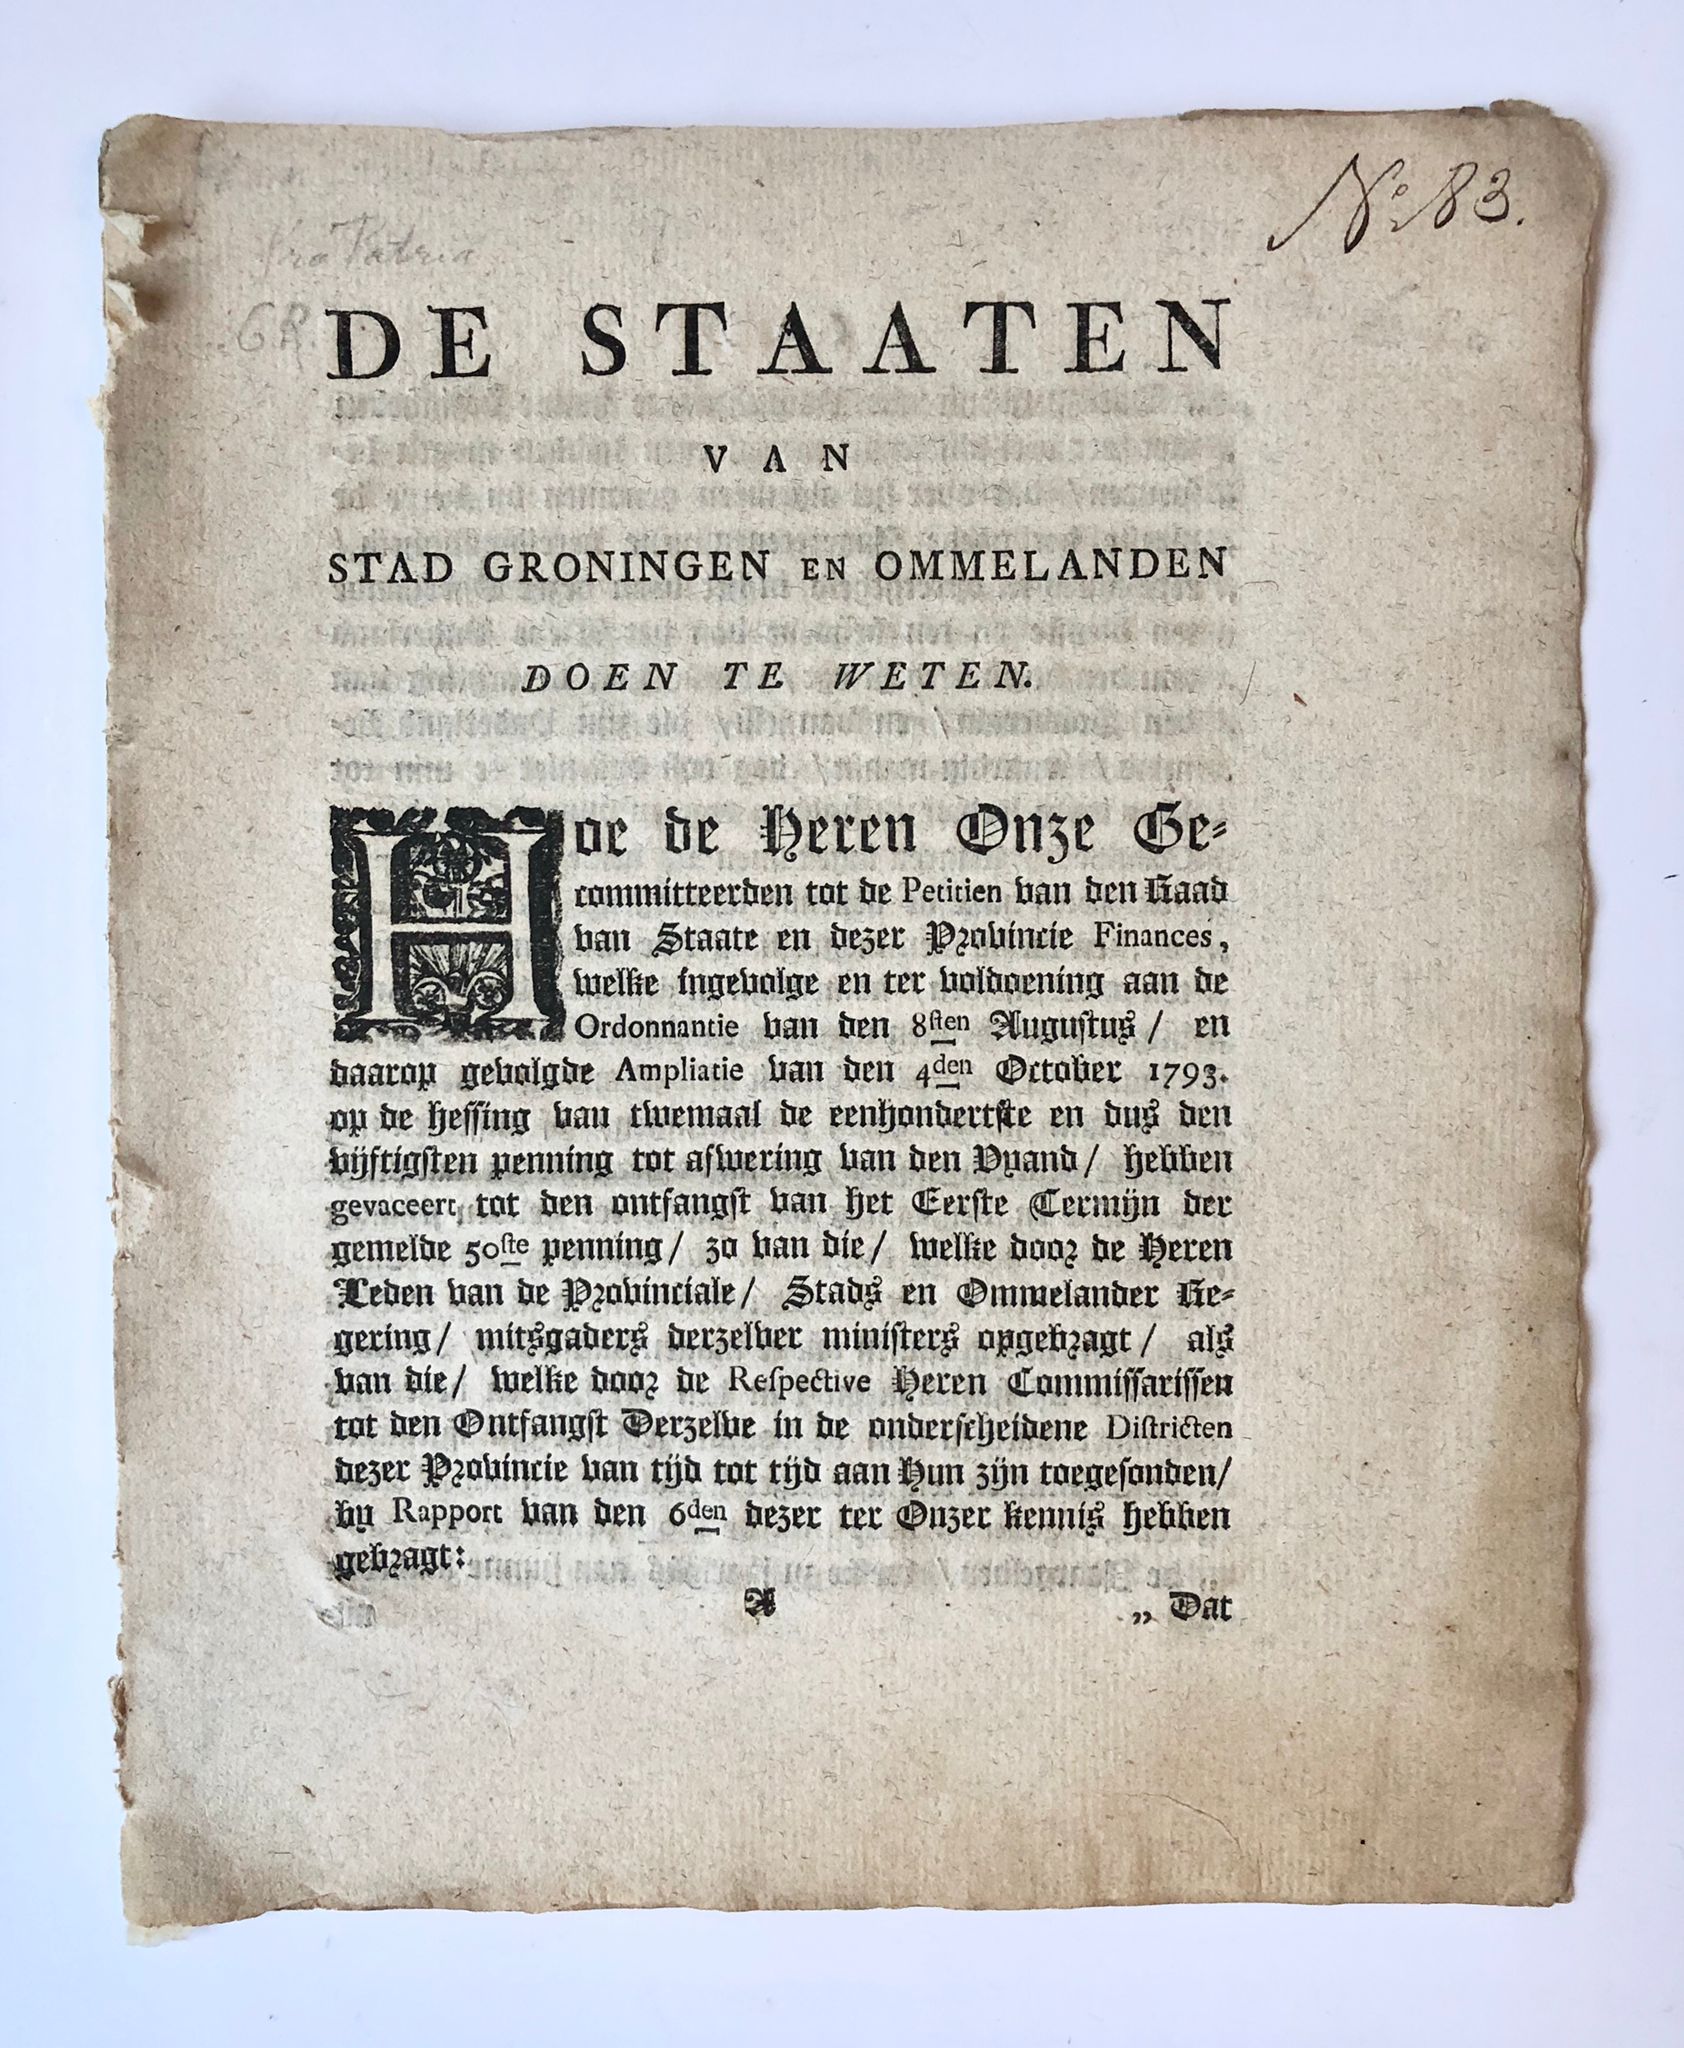 [Groningen, Belasting, Tax, [1794]] De Staaten van stad Groningen en ommelanden, doen te weeten. Hoe de heren onze gecommitteerden tot de petitien van den raad van staate (...), No. 83, [s.l., s.n. [1794], 7 pp.